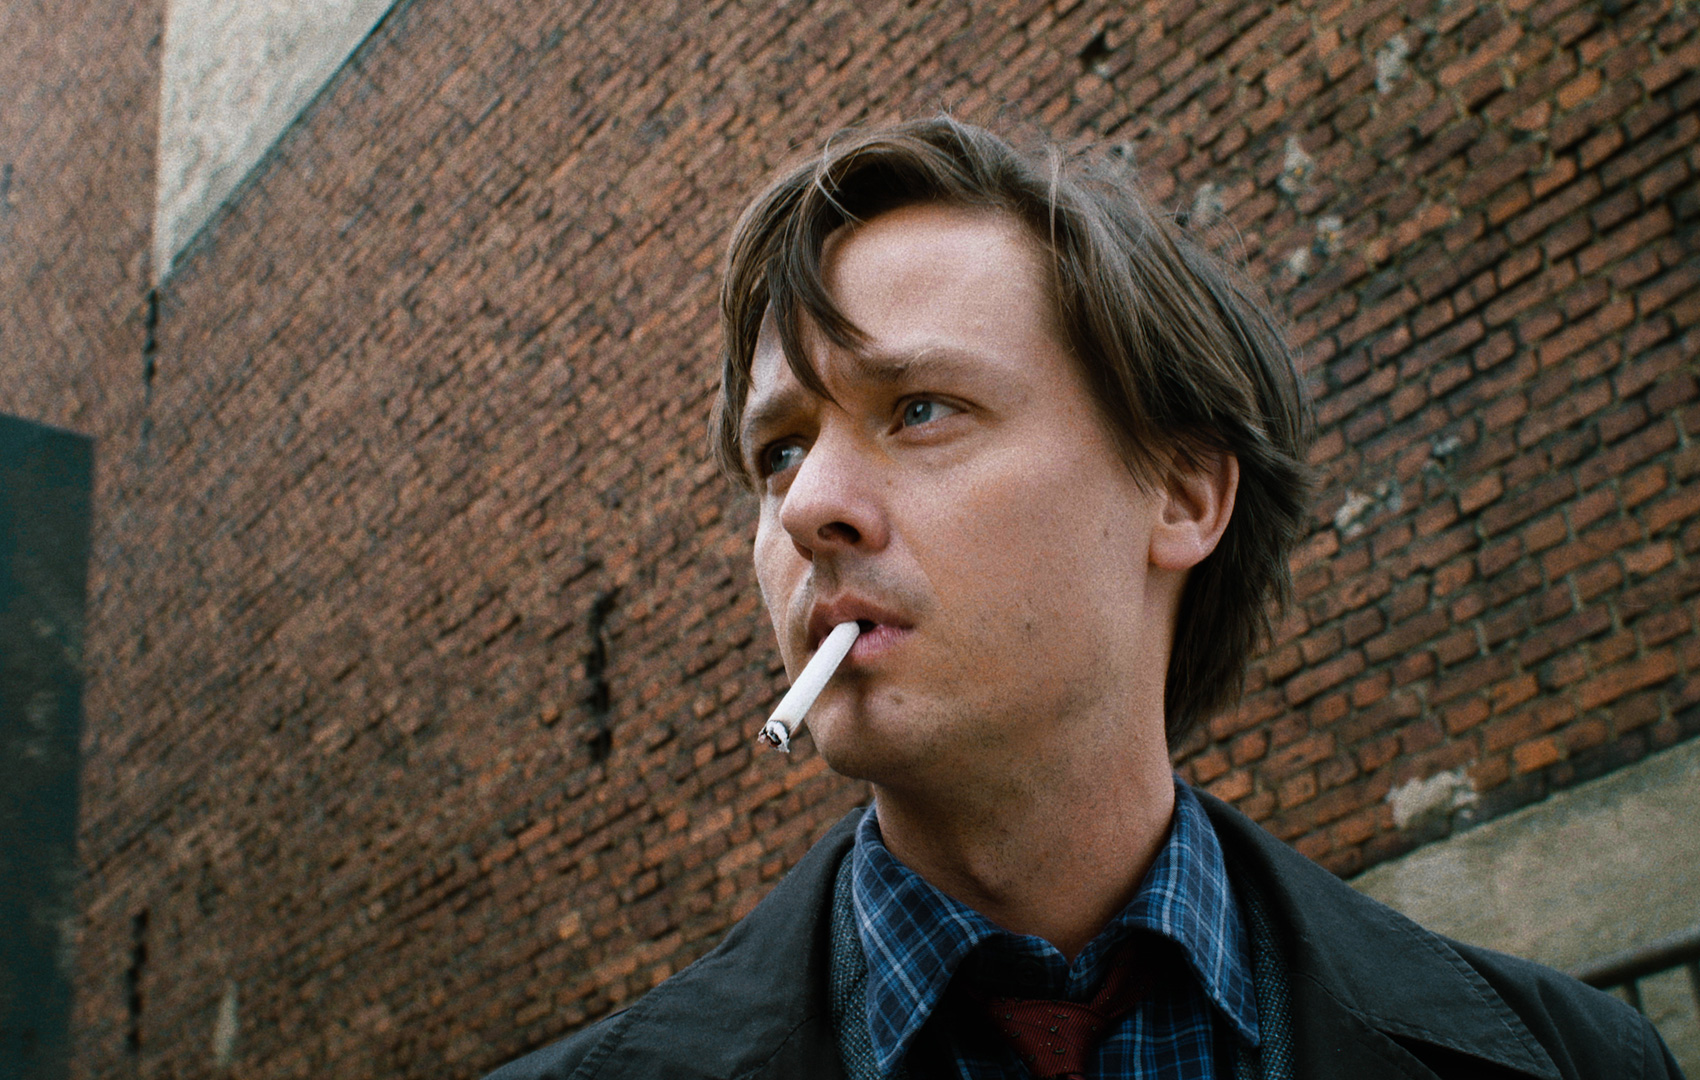 Ein von den Schultern aufwärts gezeigter Mann mit Zigarette im Mund schaut mit düsterem Blick aus dem linken Bildrand heraus.